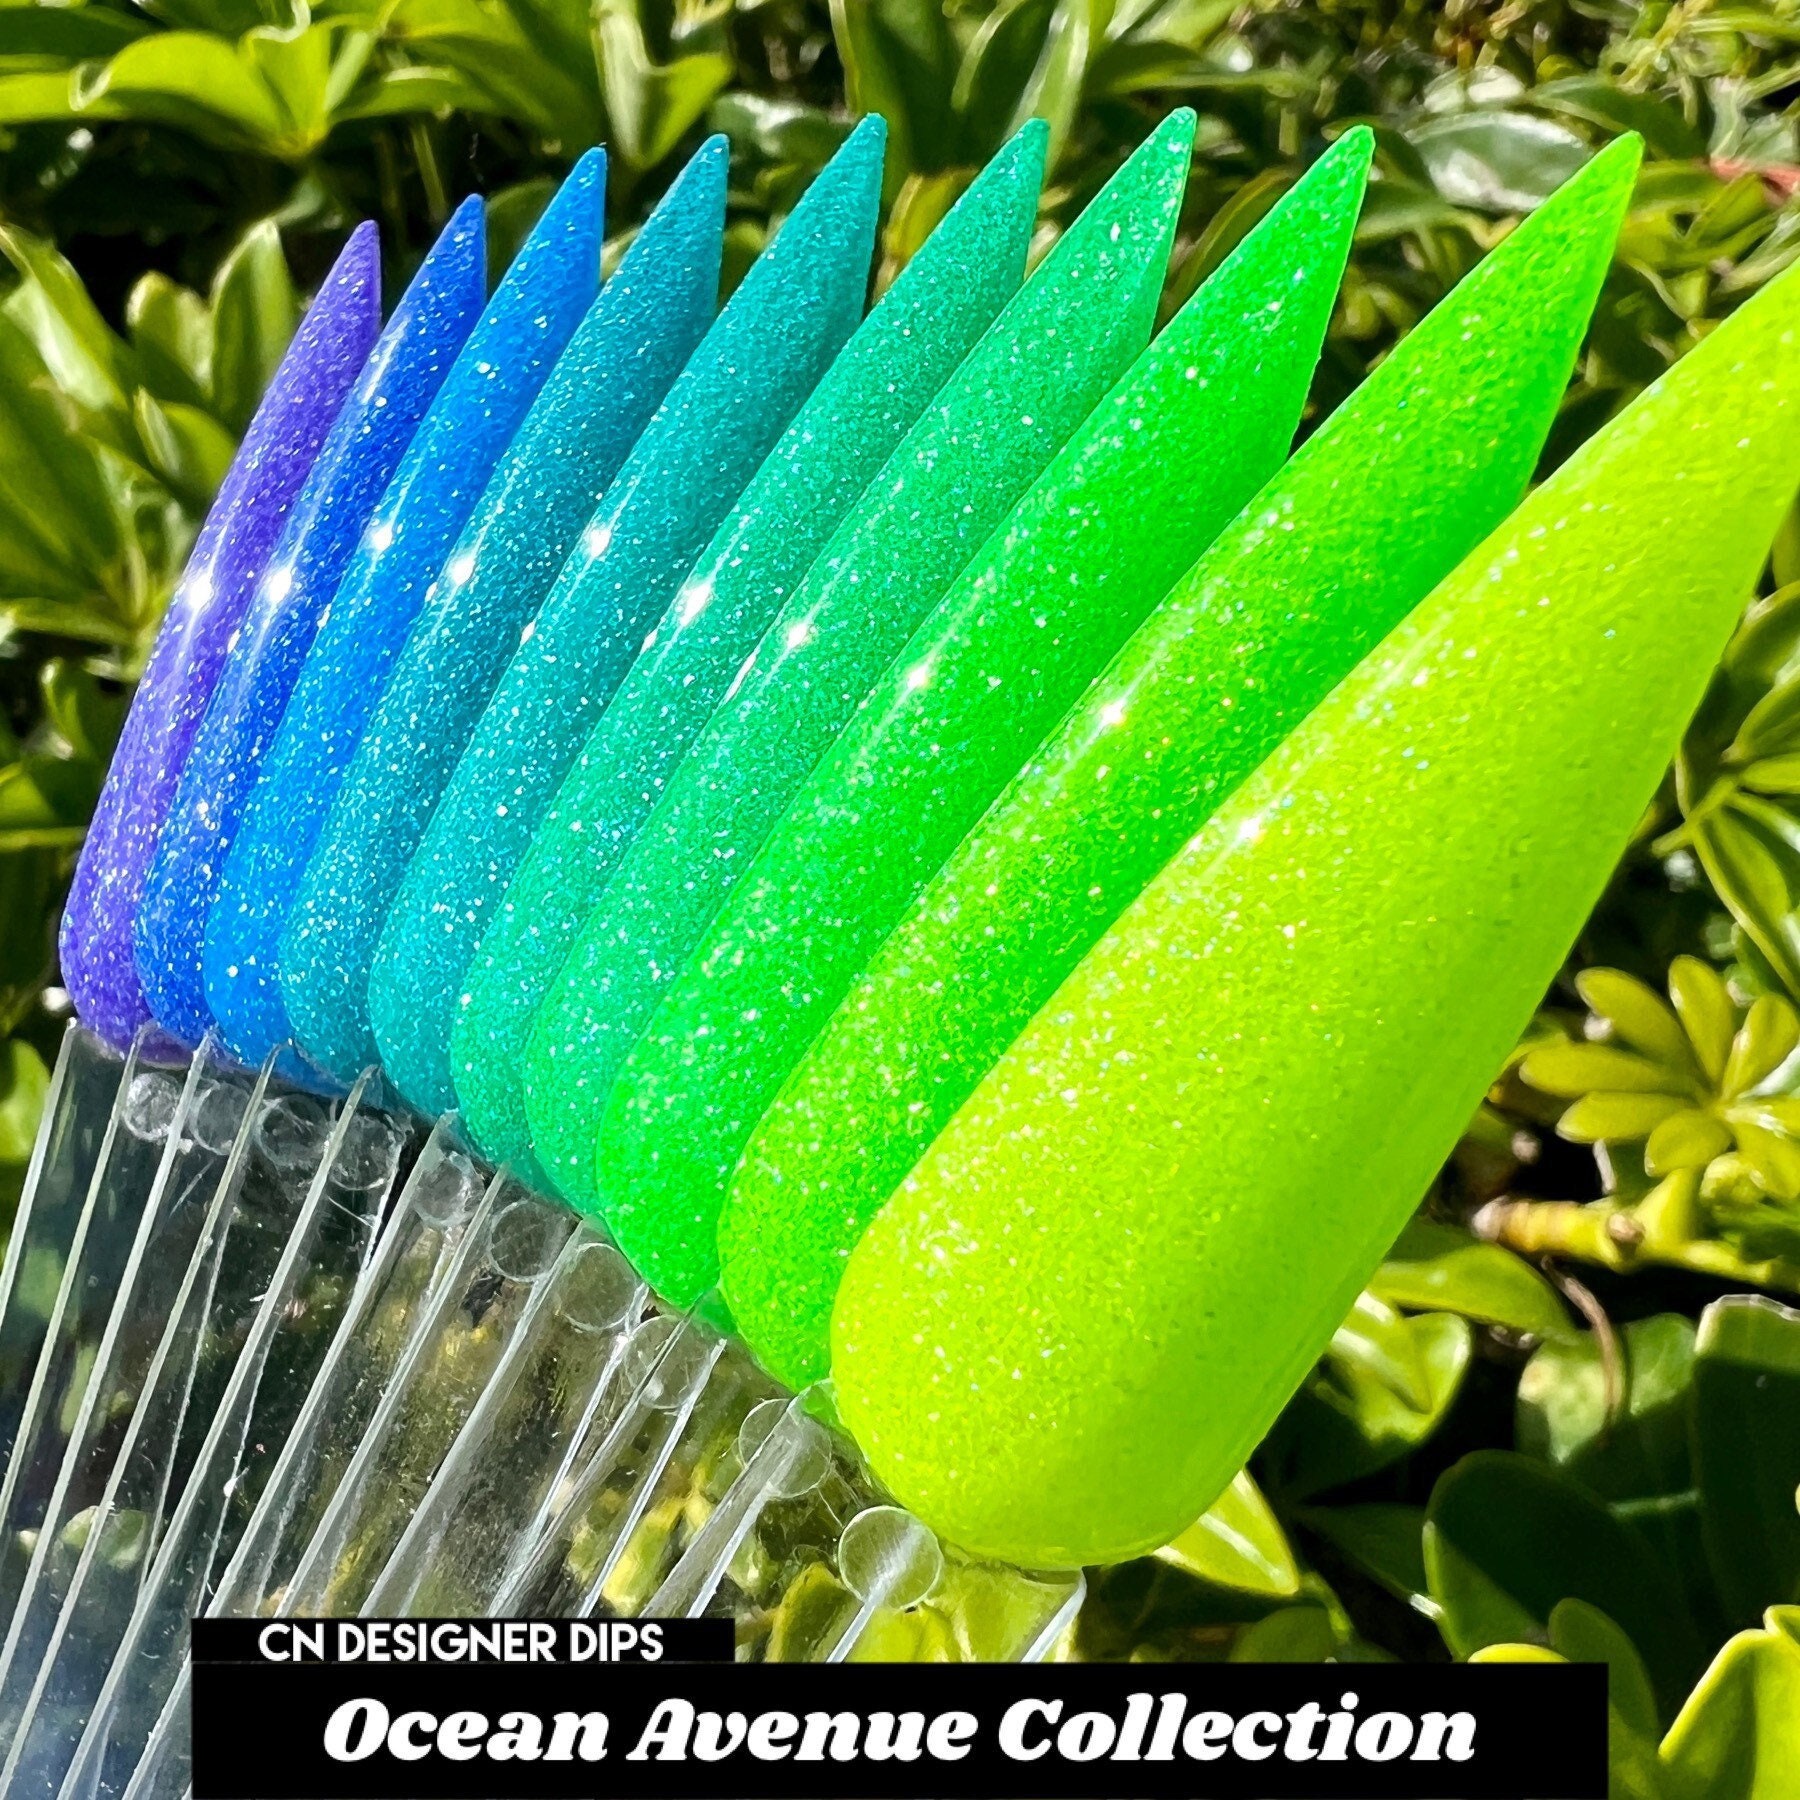 Ocean Ave Collection - Dippulver, Dippulver Für Nägel, Dip-Pulver, Dip-Nagelpulver, Neon-Dip-Pulver, Acryl, Nagel, Acrylpulver von CNDesignerDips